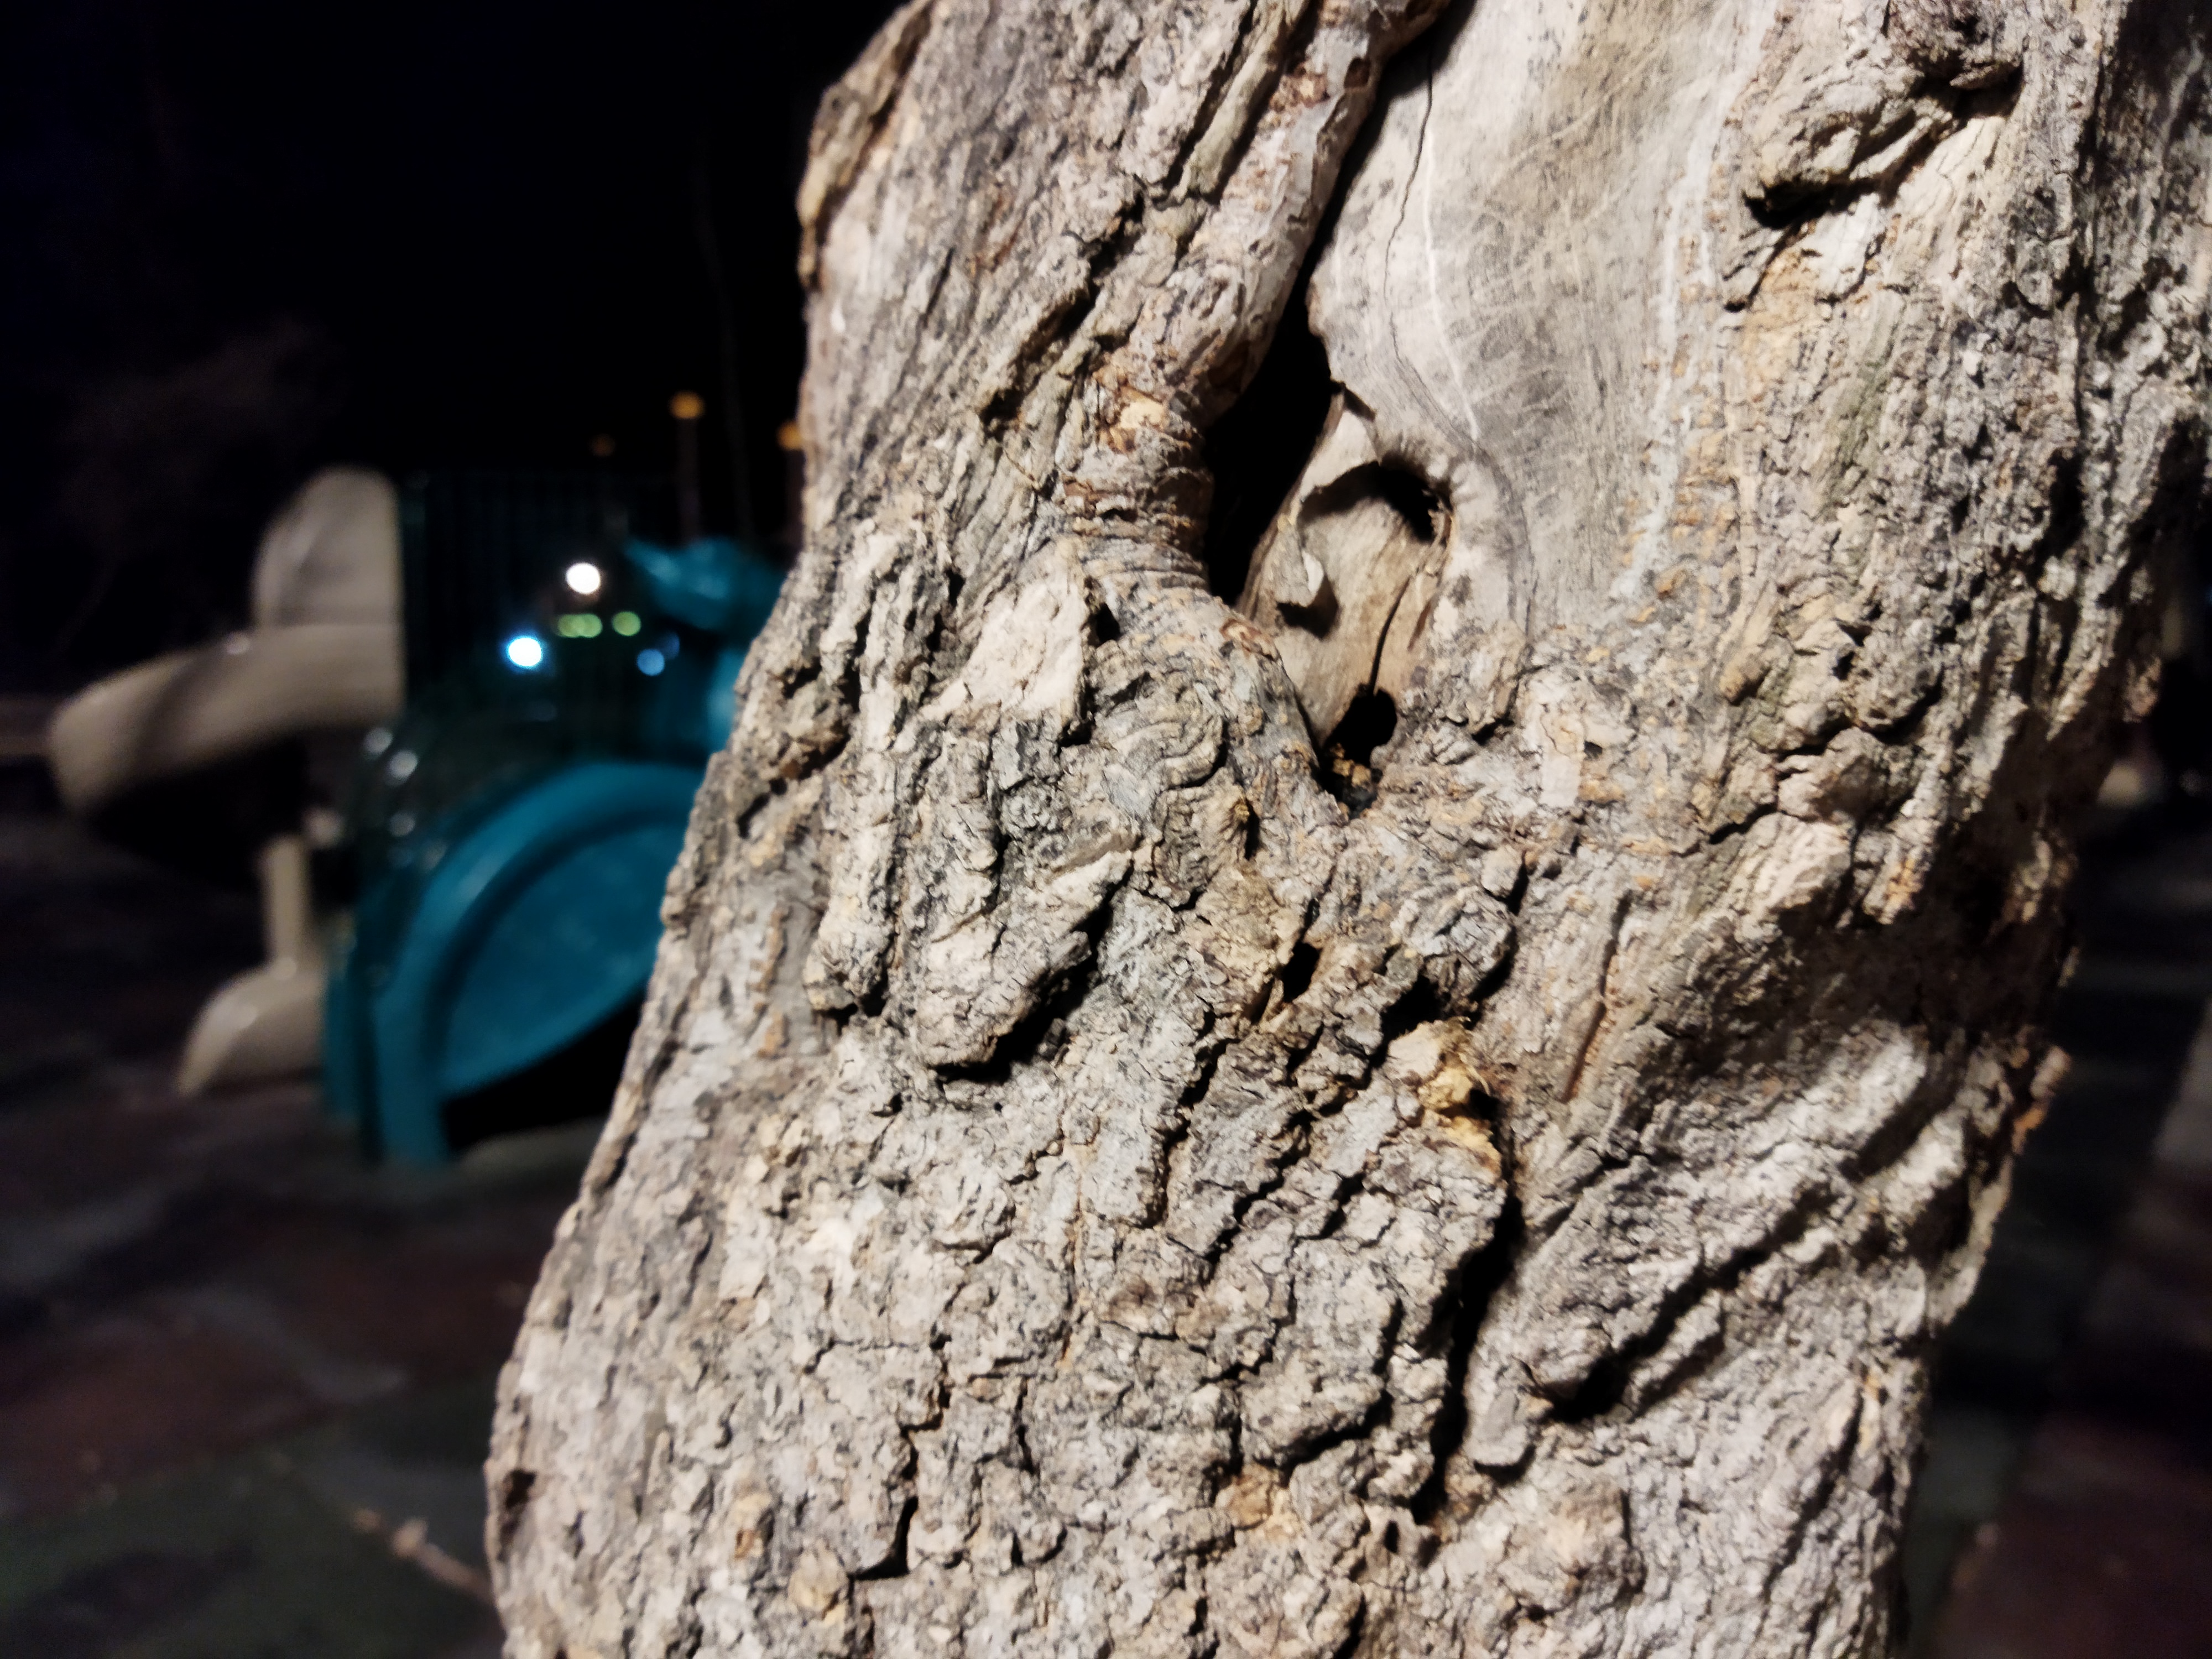 نمونه عکس با دوربین اصلی پوکو ام ۳ در شب عکاسی از درخت